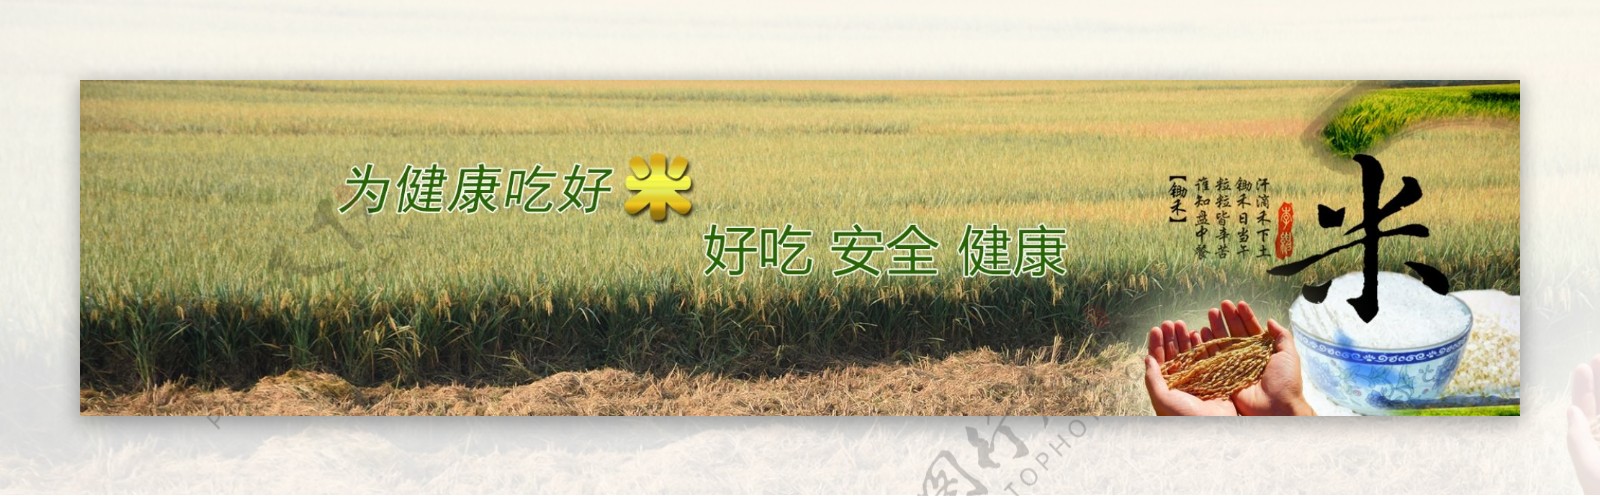 种植业水稻大米全屏展示图